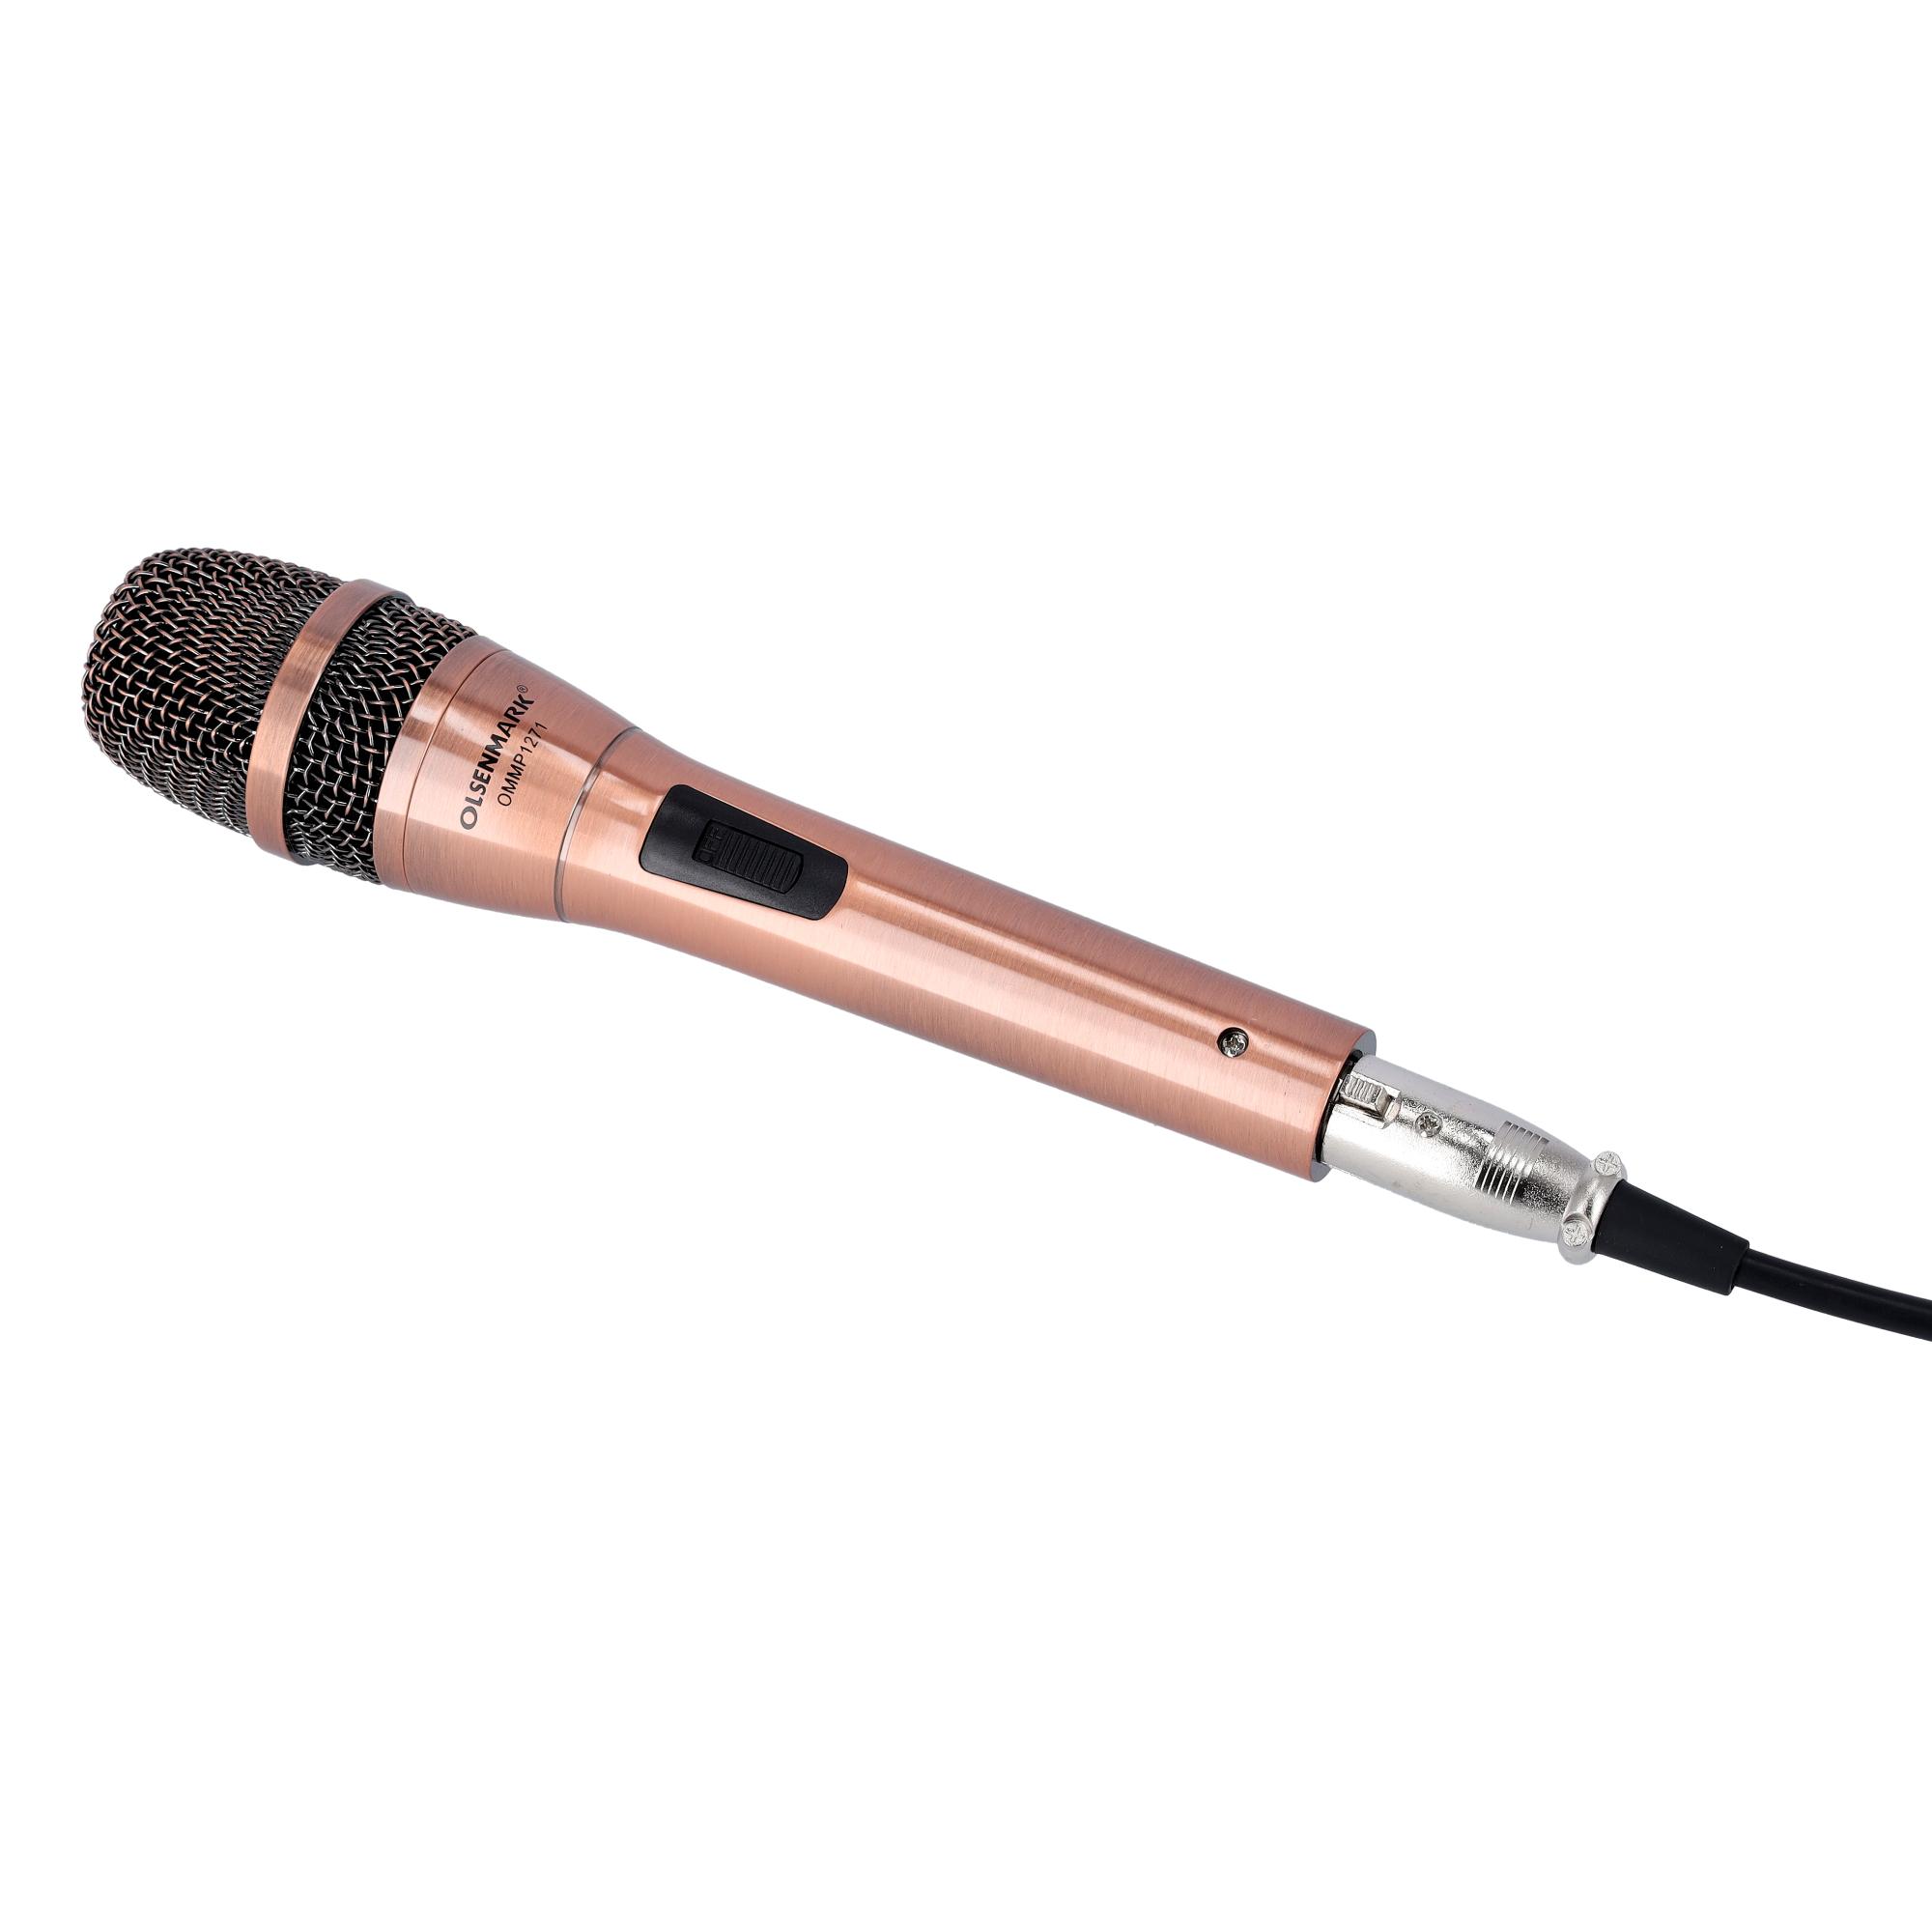 ميكروفون بهيكل معدني Olsenmark Microphone with Metal Capsule Body